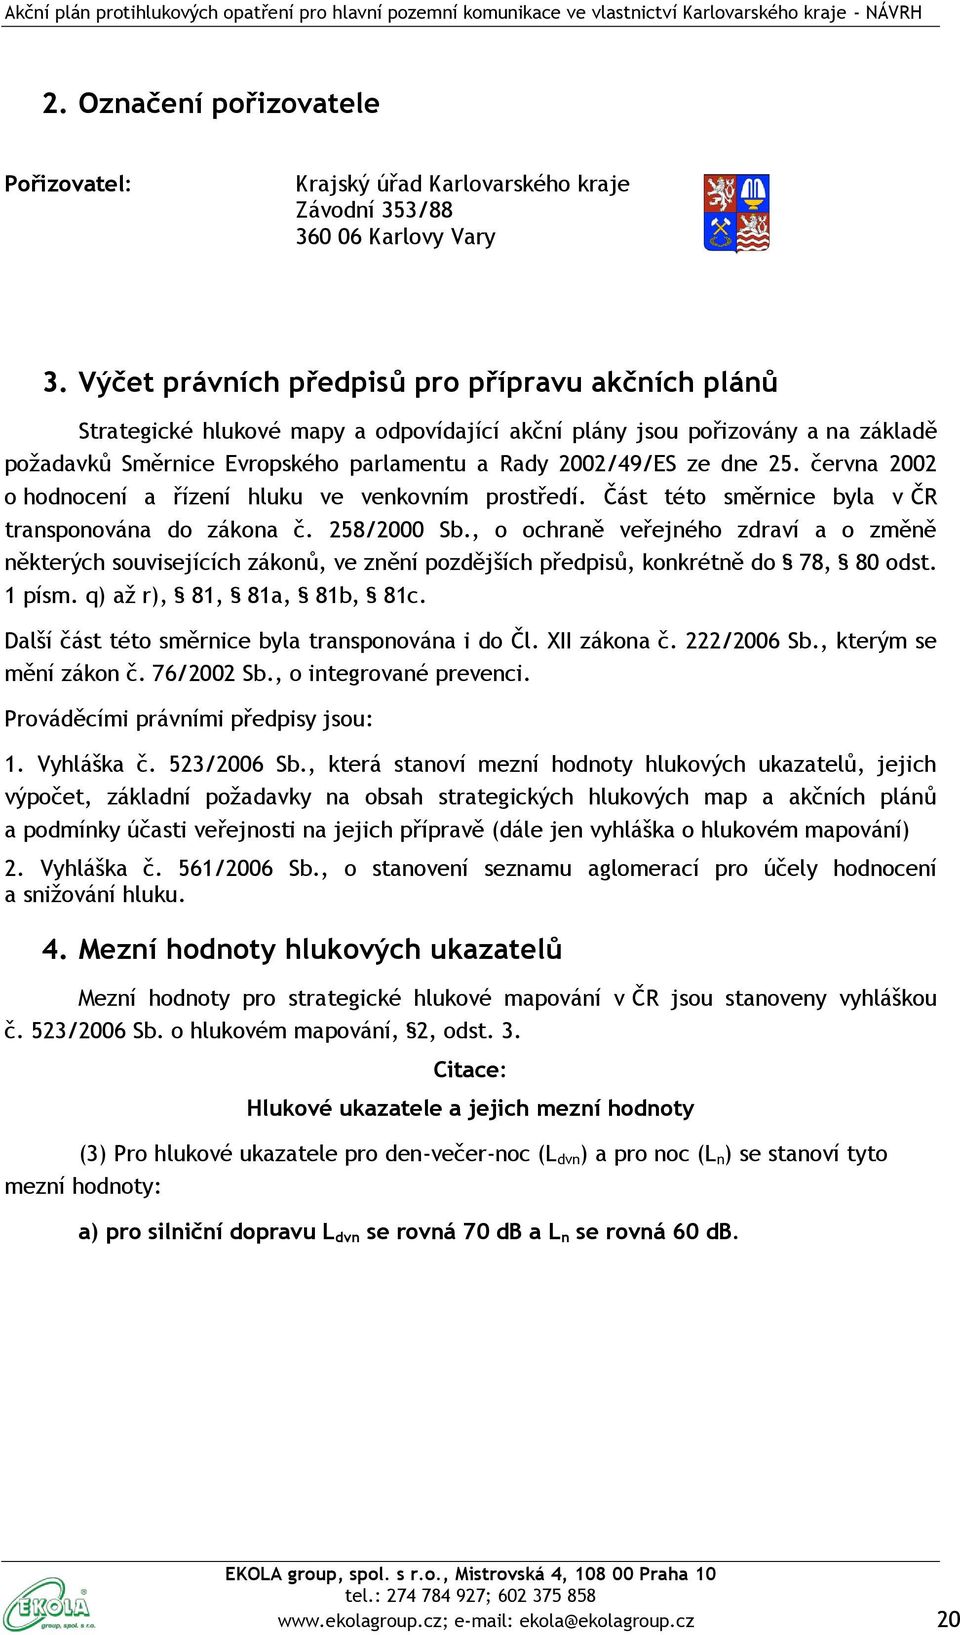 25. června 2002 o hodnocení a řízení hluku ve venkovním prostředí. Část této směrnice byla v ČR transponována do zákona č. 258/2000 Sb.